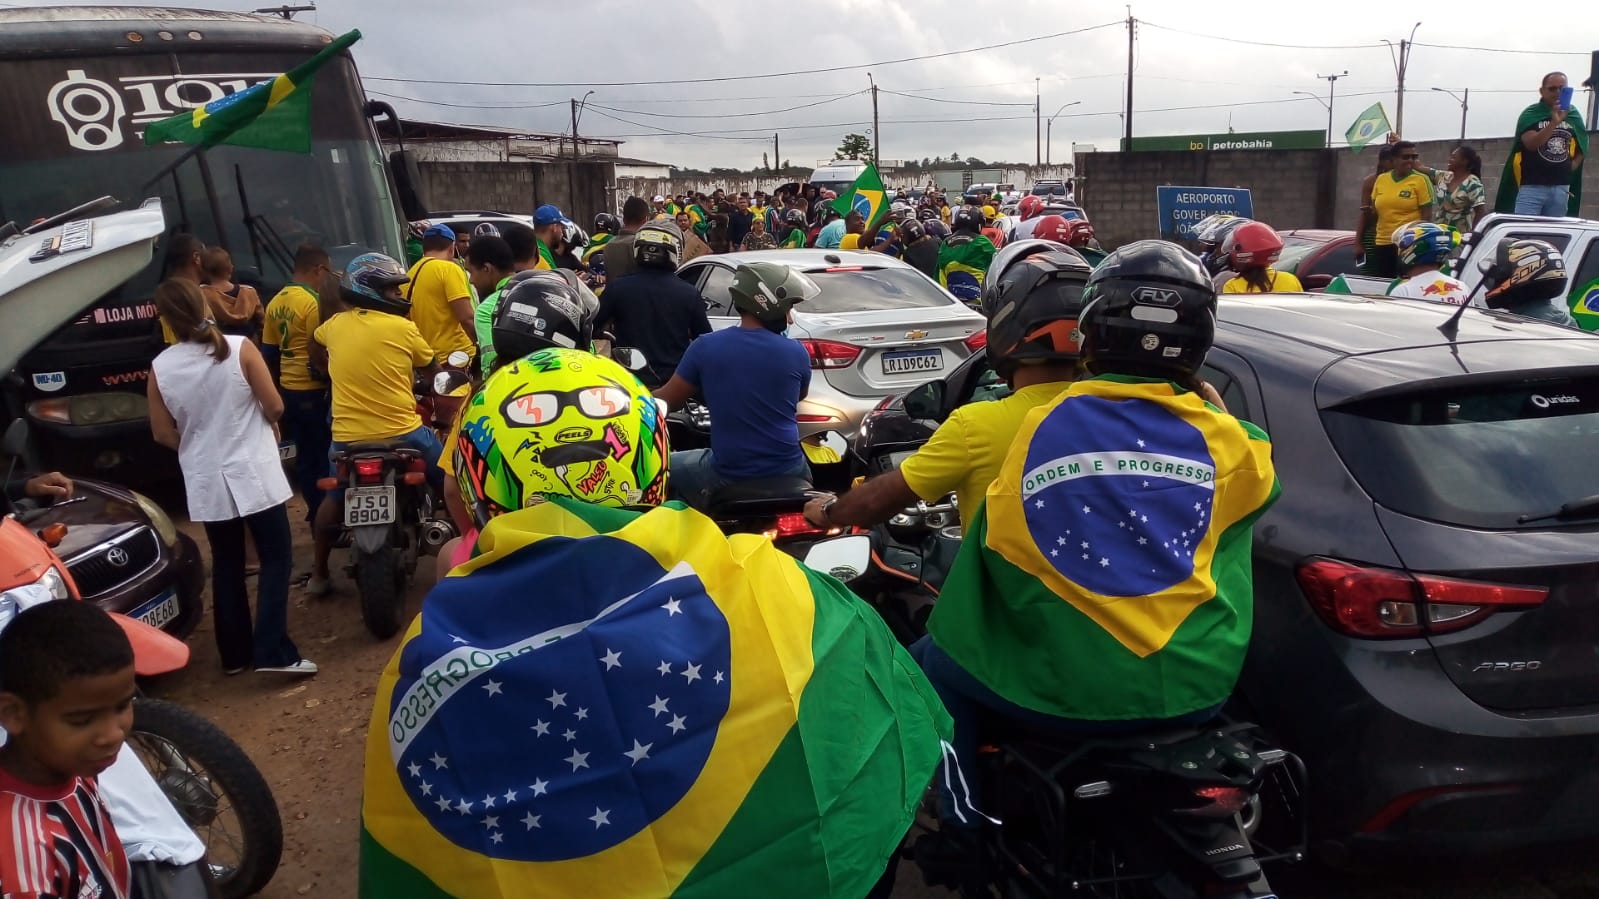 Apoiadores madrugaram em Feira para chegada de Bolsonaro